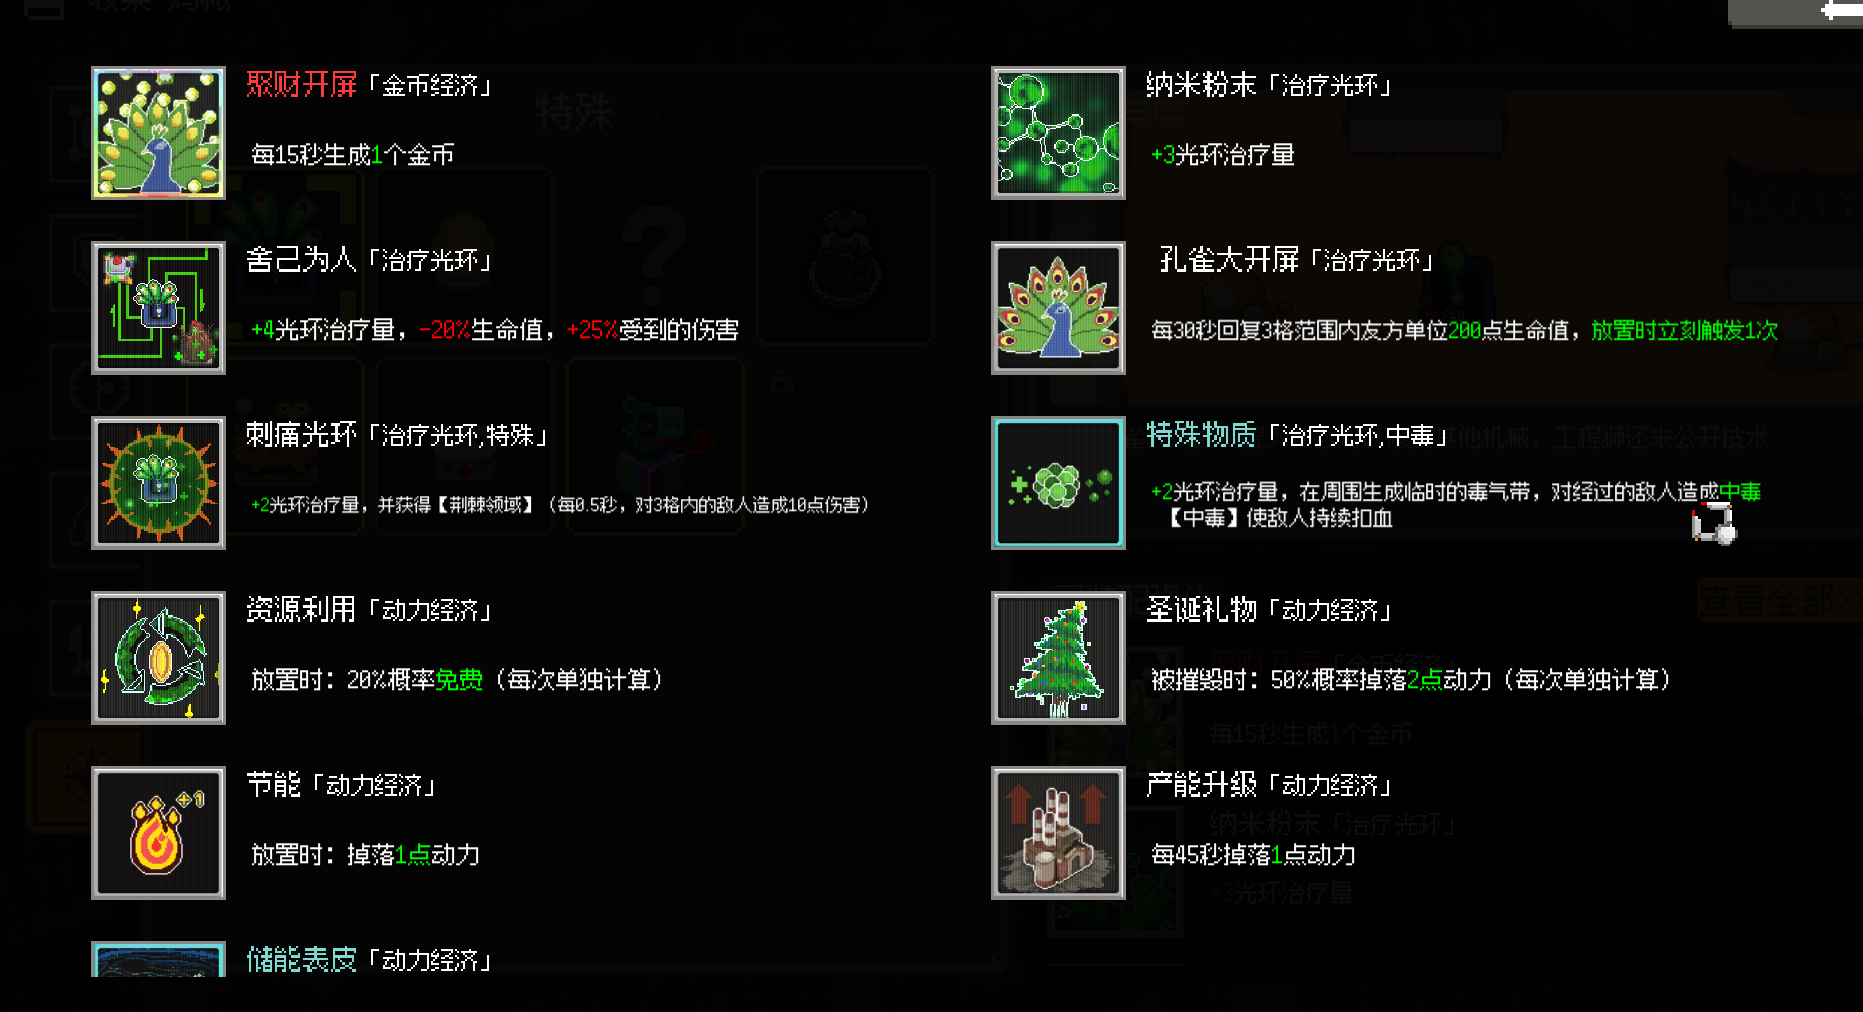 鸡械绿洲游戏孔雀塔用什么强化比较好 鸡械绿洲游戏孔雀塔好用强化推荐图2